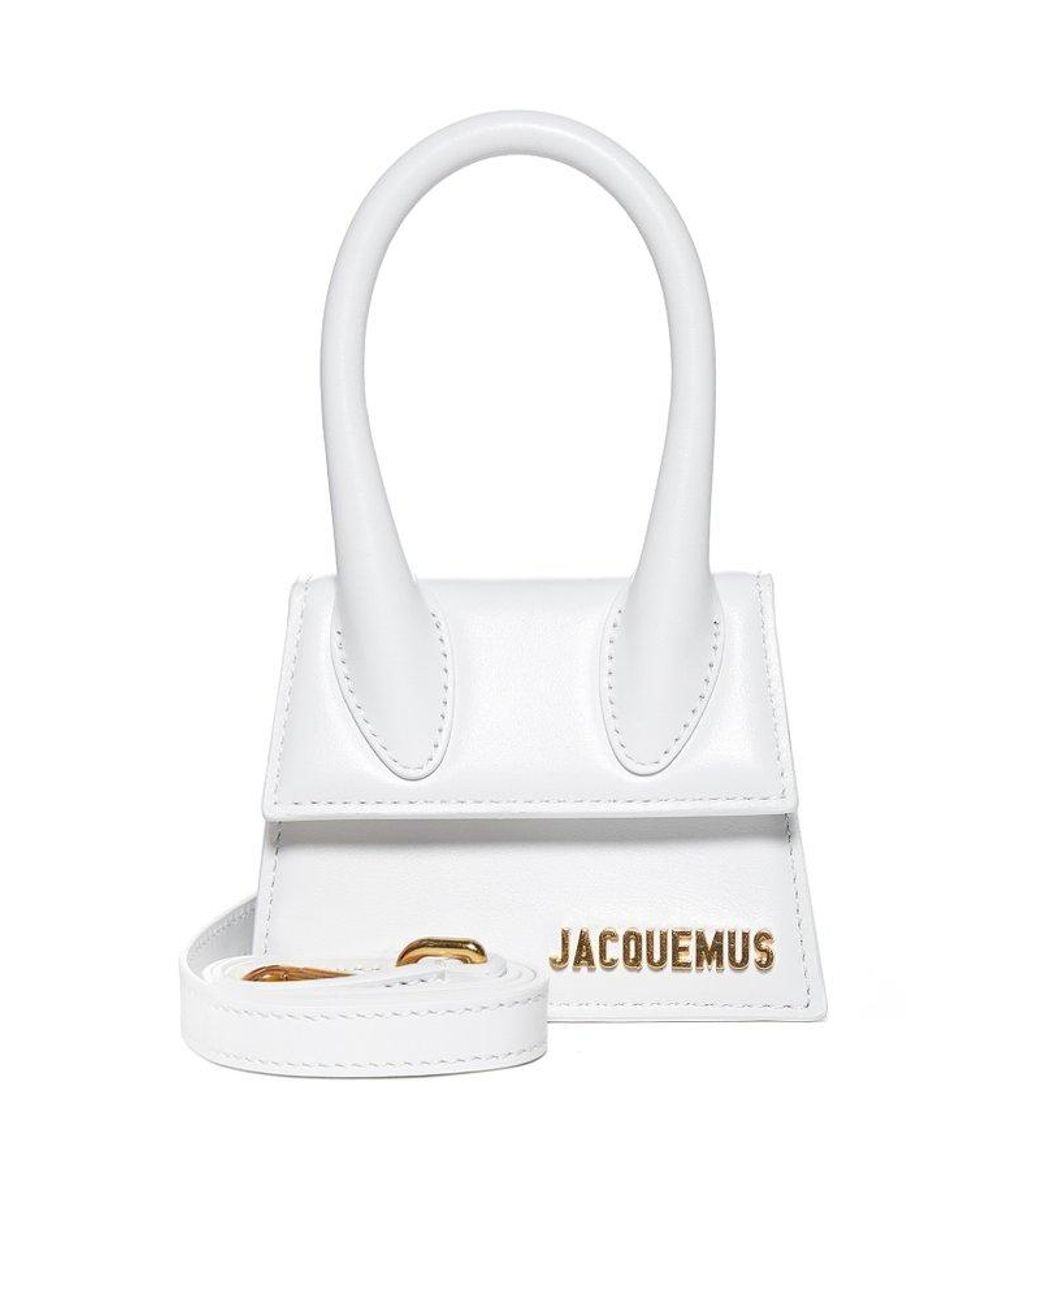 Jacquemus Le Chiquito Logo Plaque Mini Crossbody Bag in White | Lyst